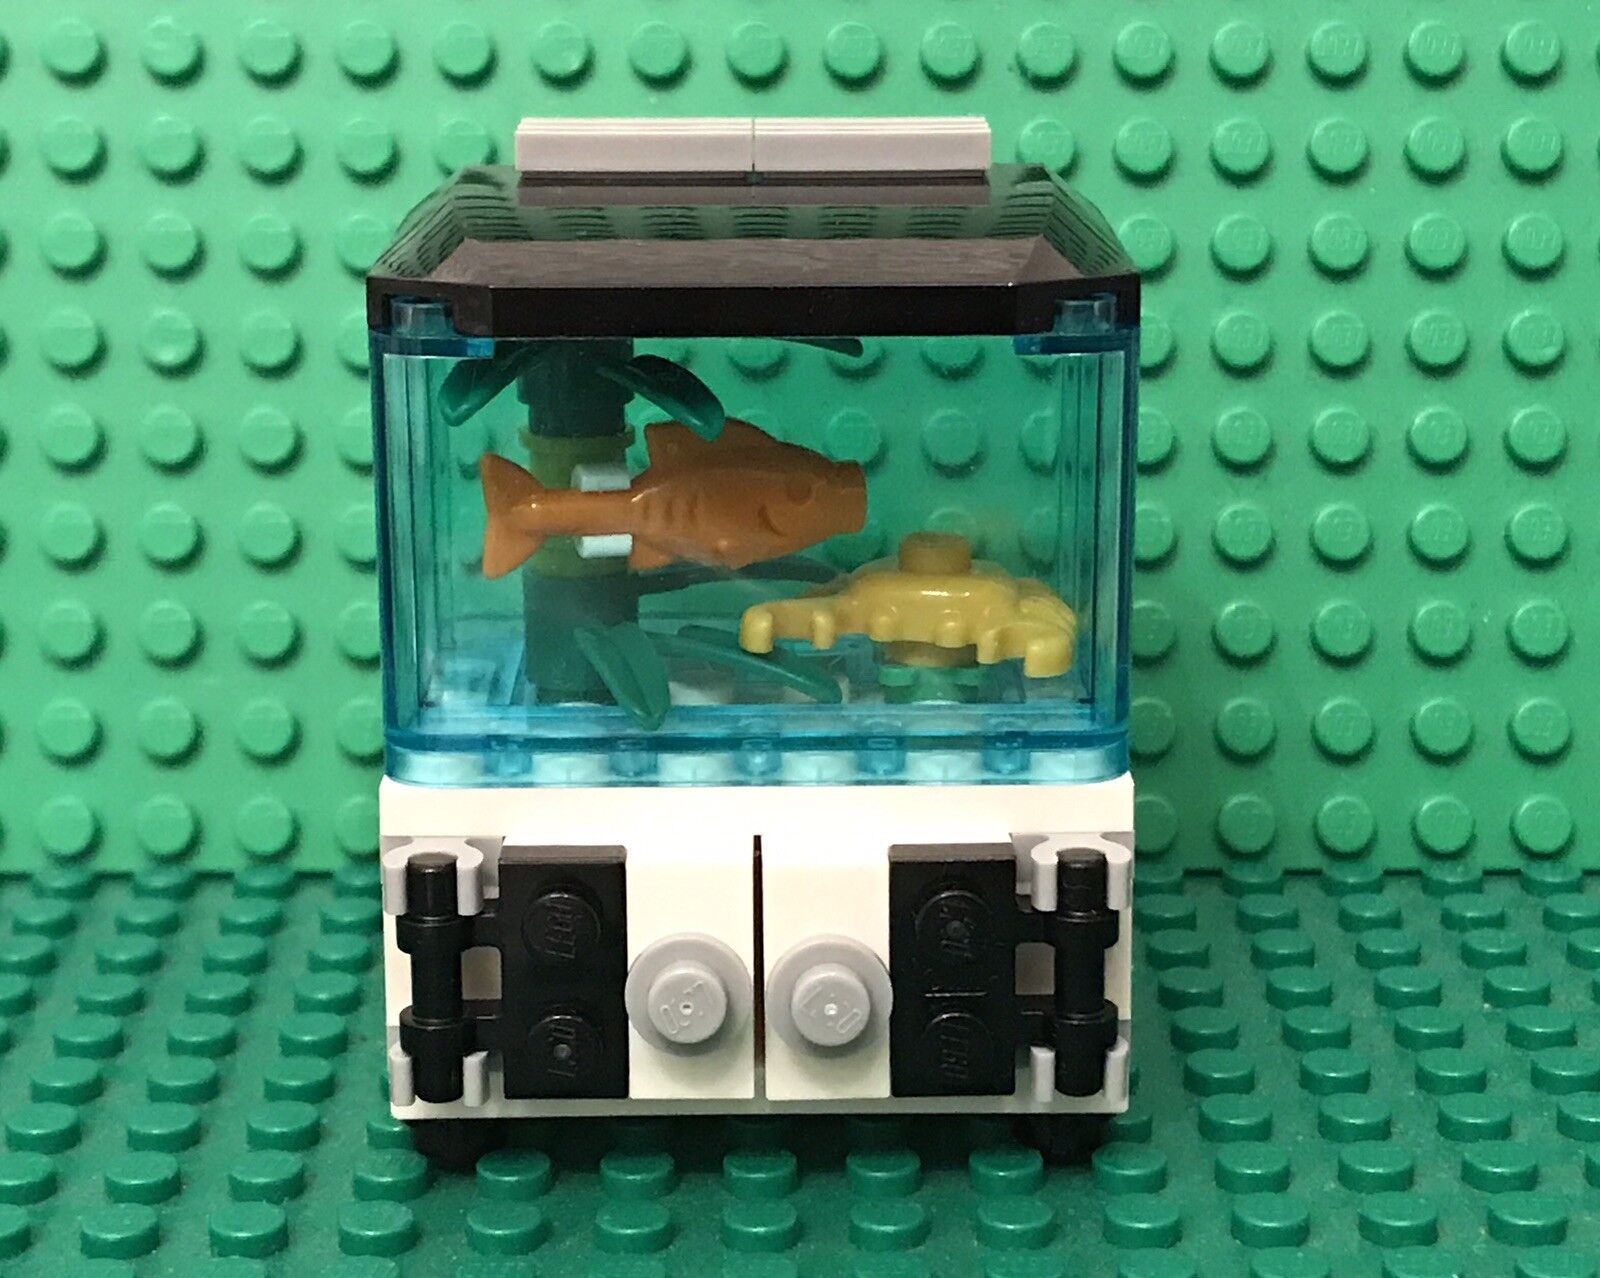 Lego City Prebuilt Mini Figures Aquarium / Gold Fish Tank With Crab And Plants